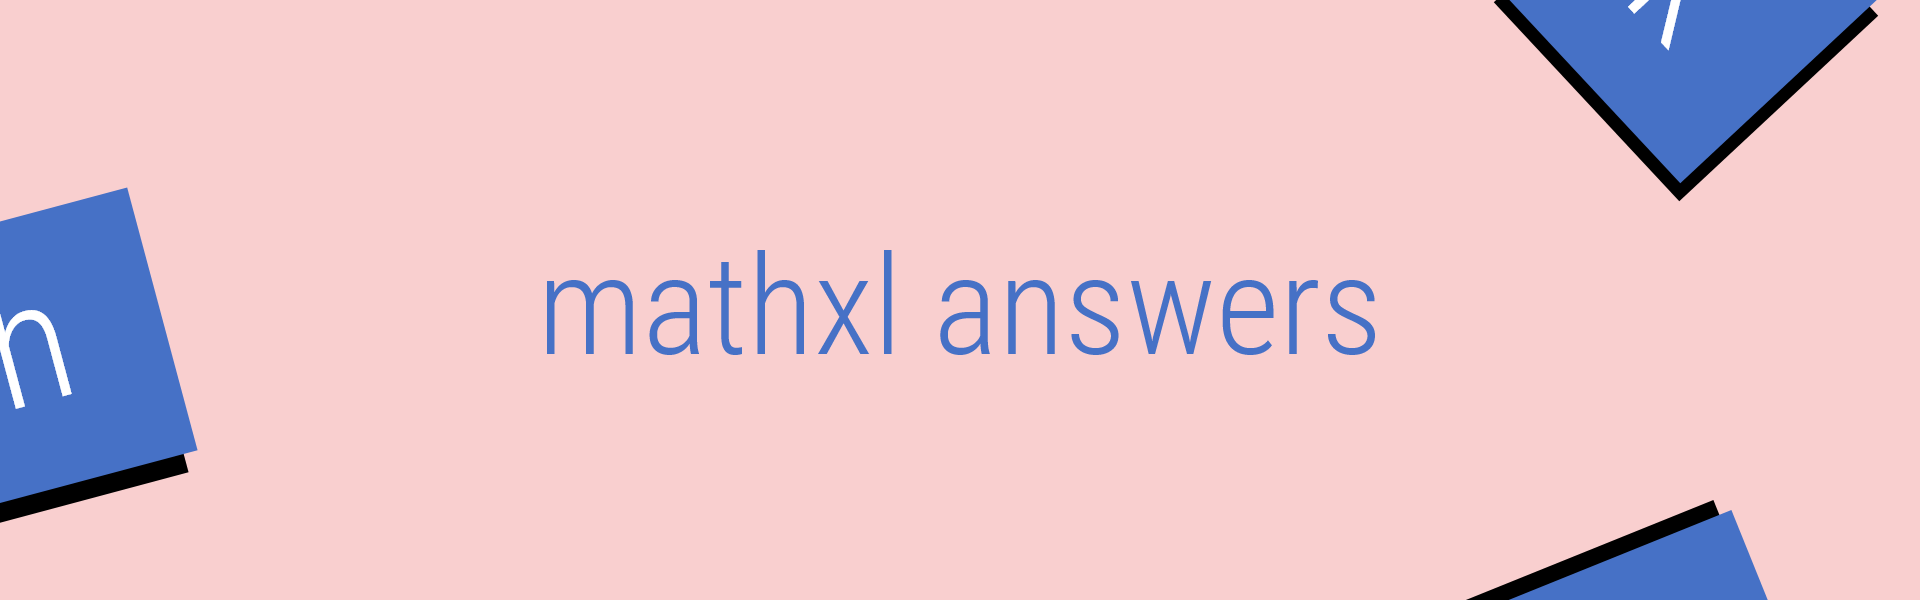 mathxl answers